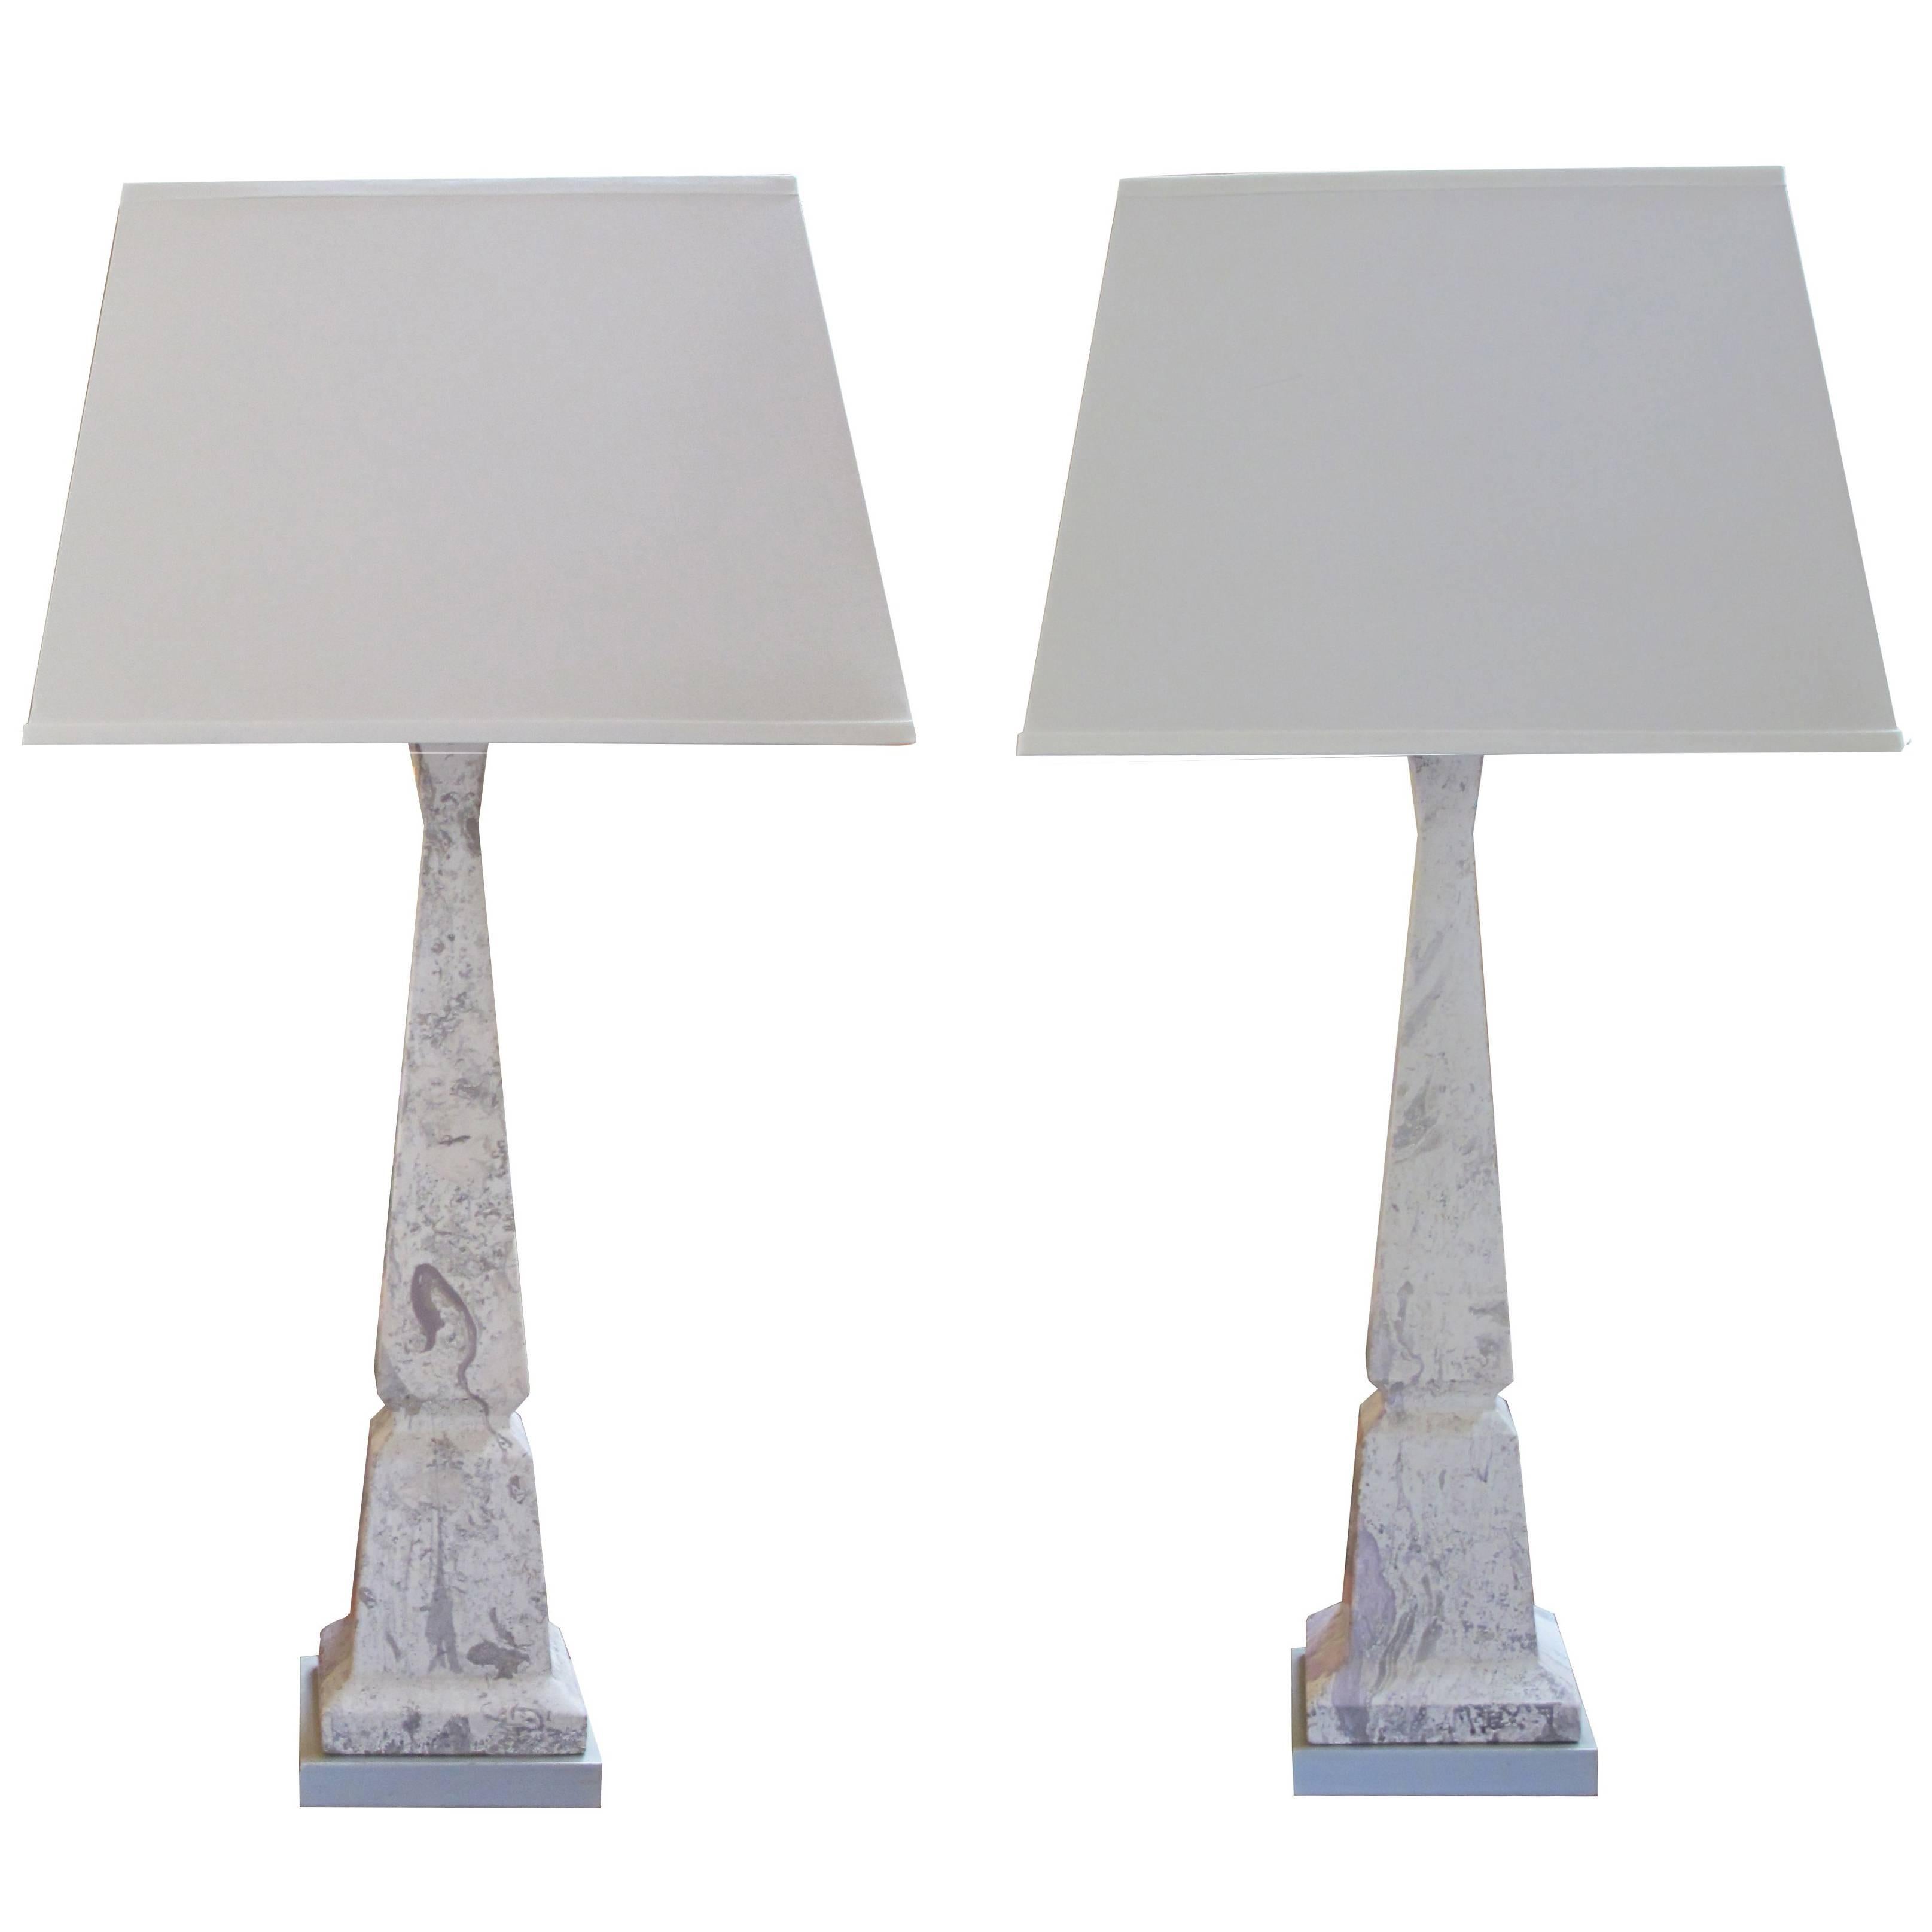 Sleek Pair of American Faux Marble Ceramic Obelisk Lamps by Tye of California